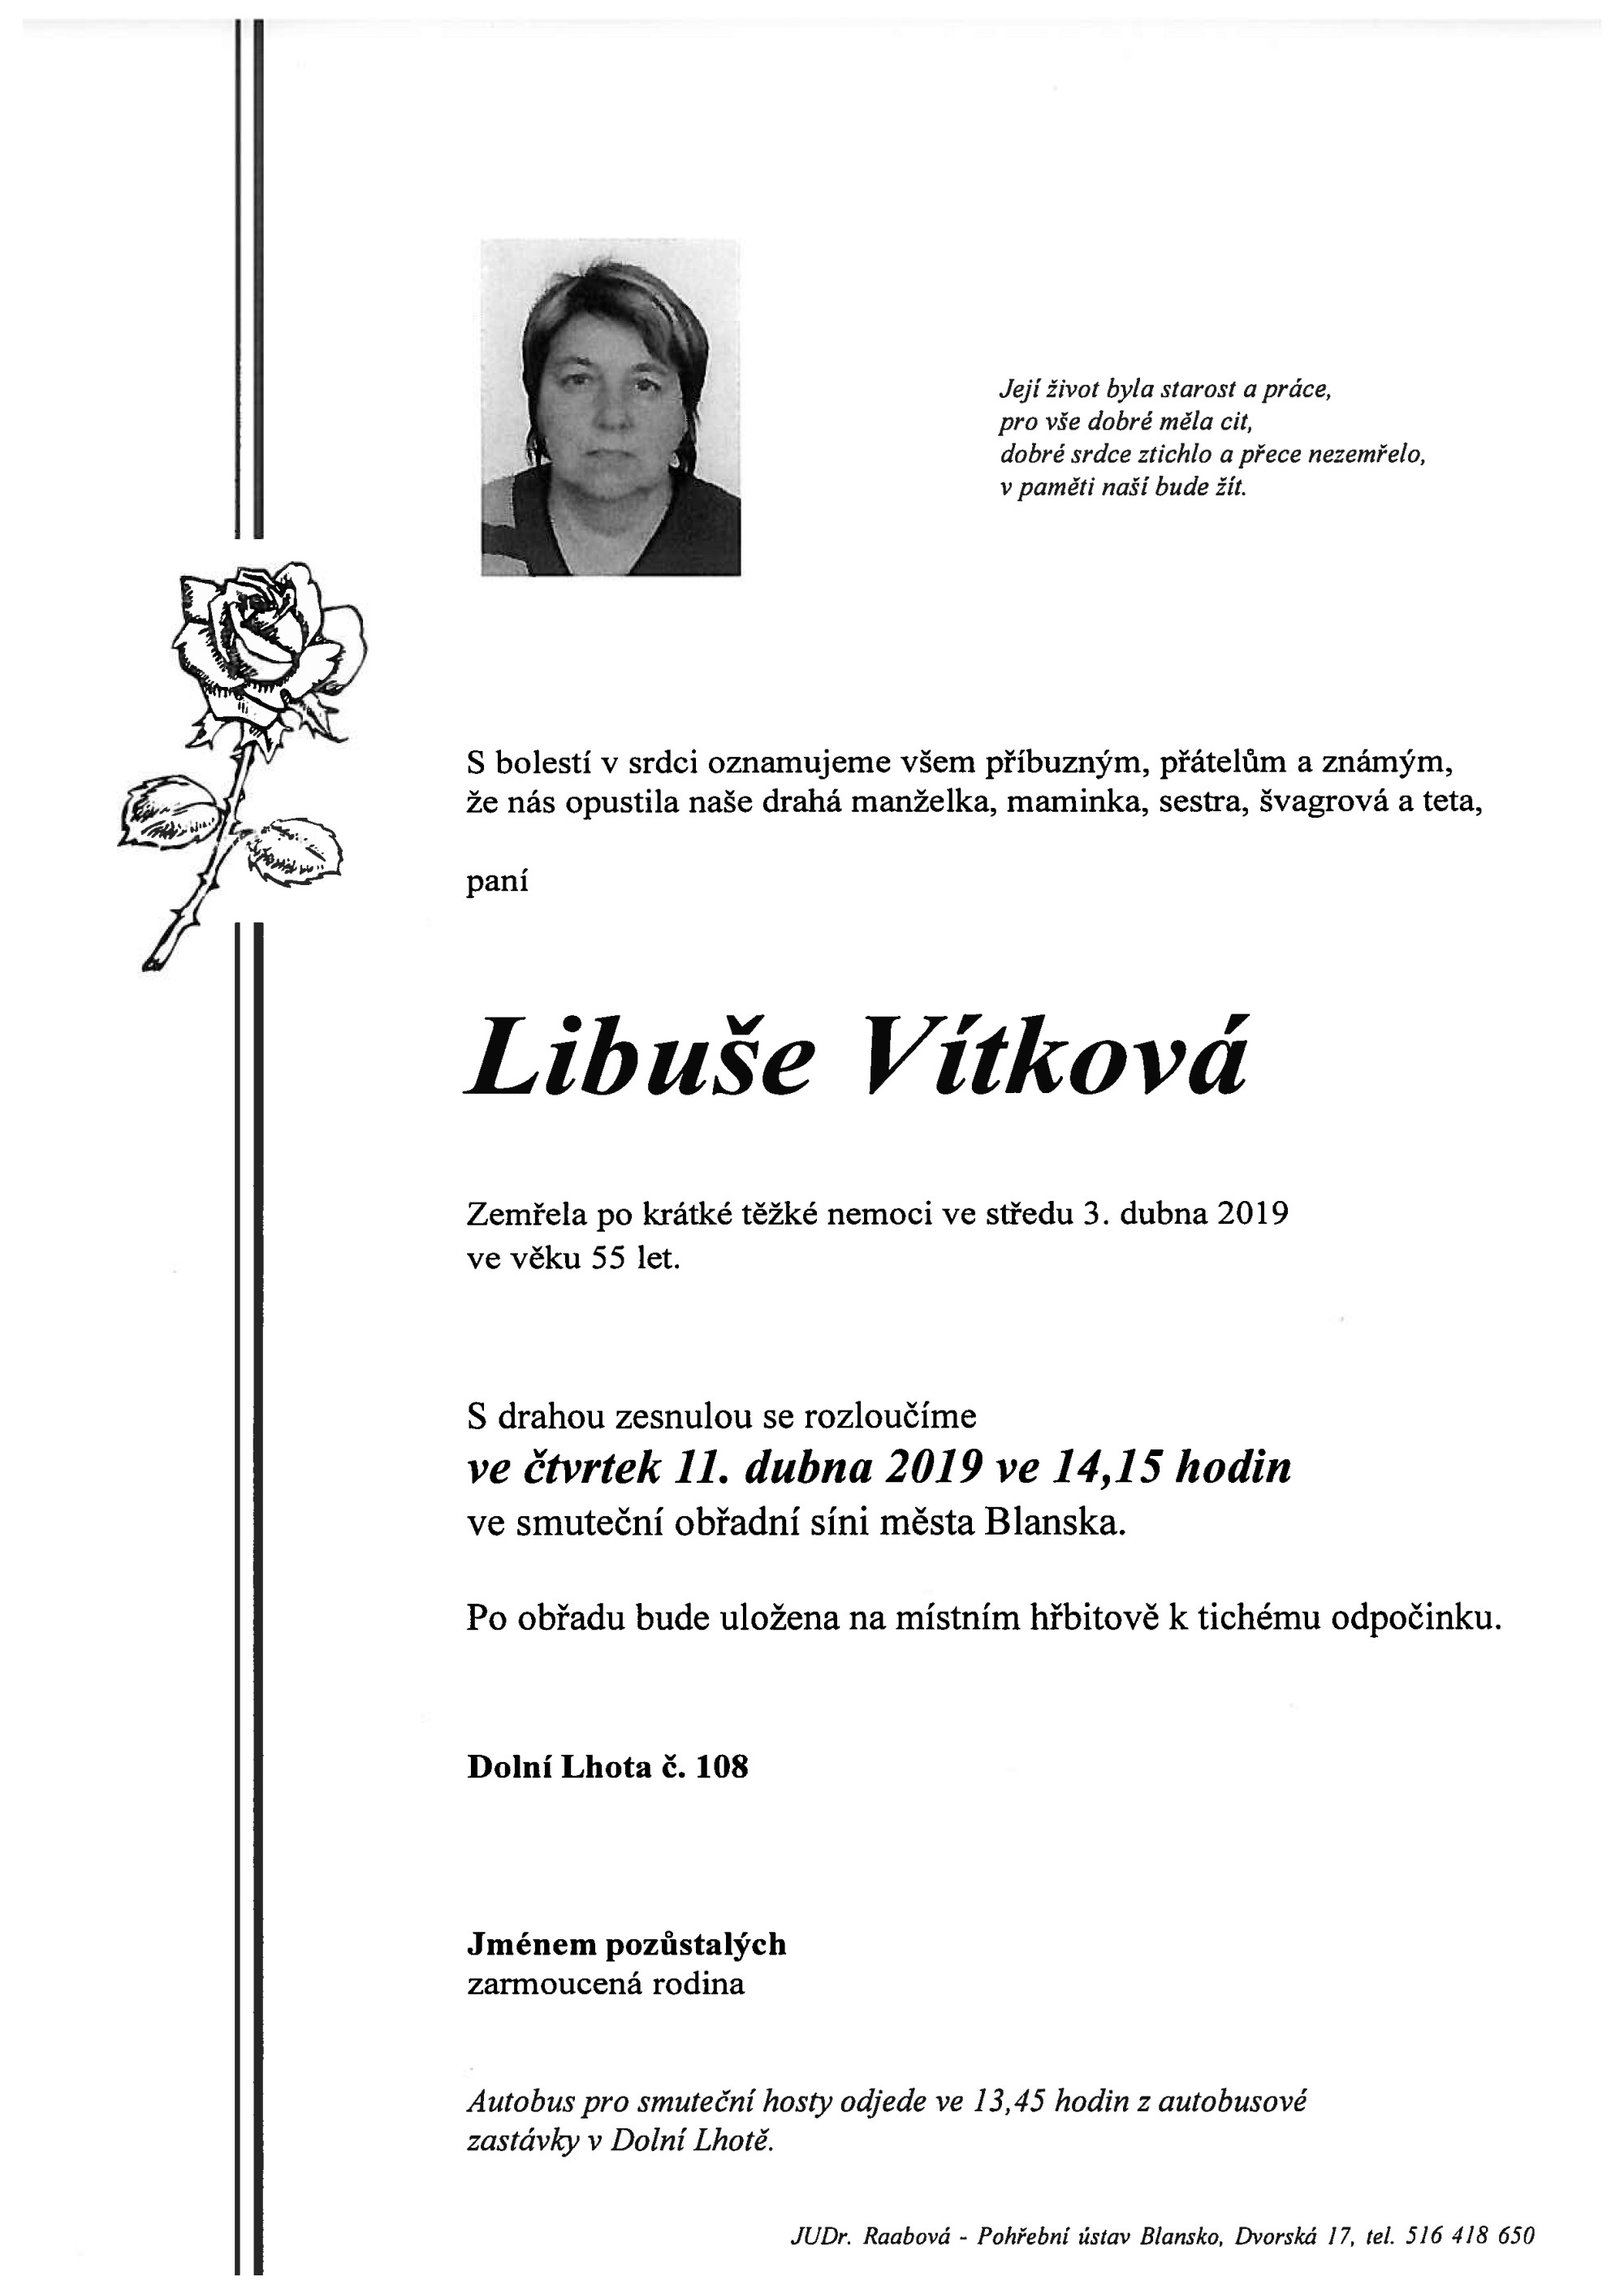 Libuše Vítková